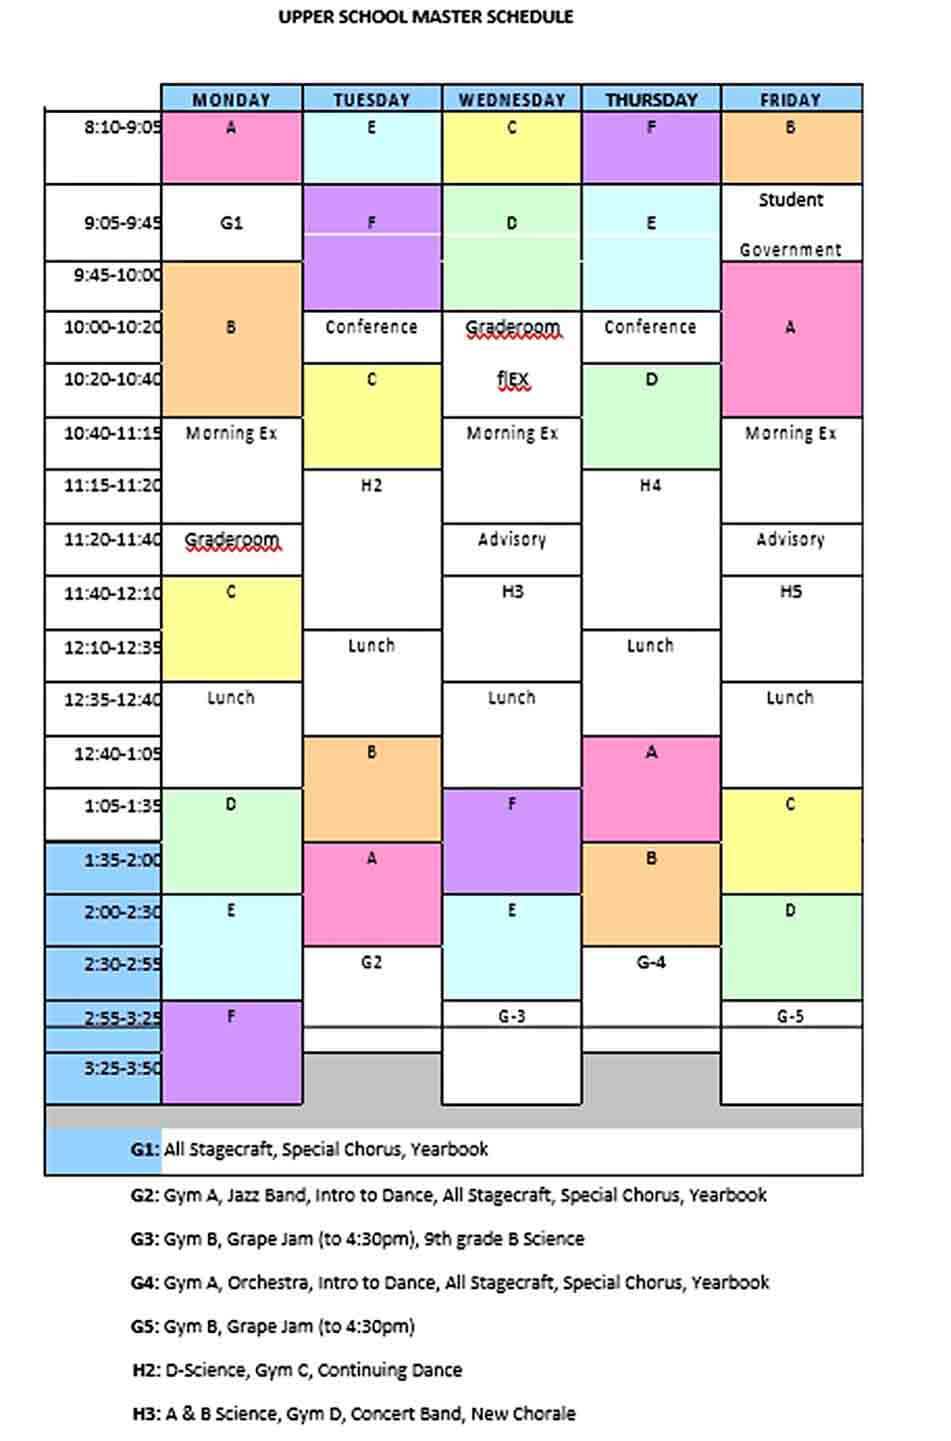 School Master Schedule